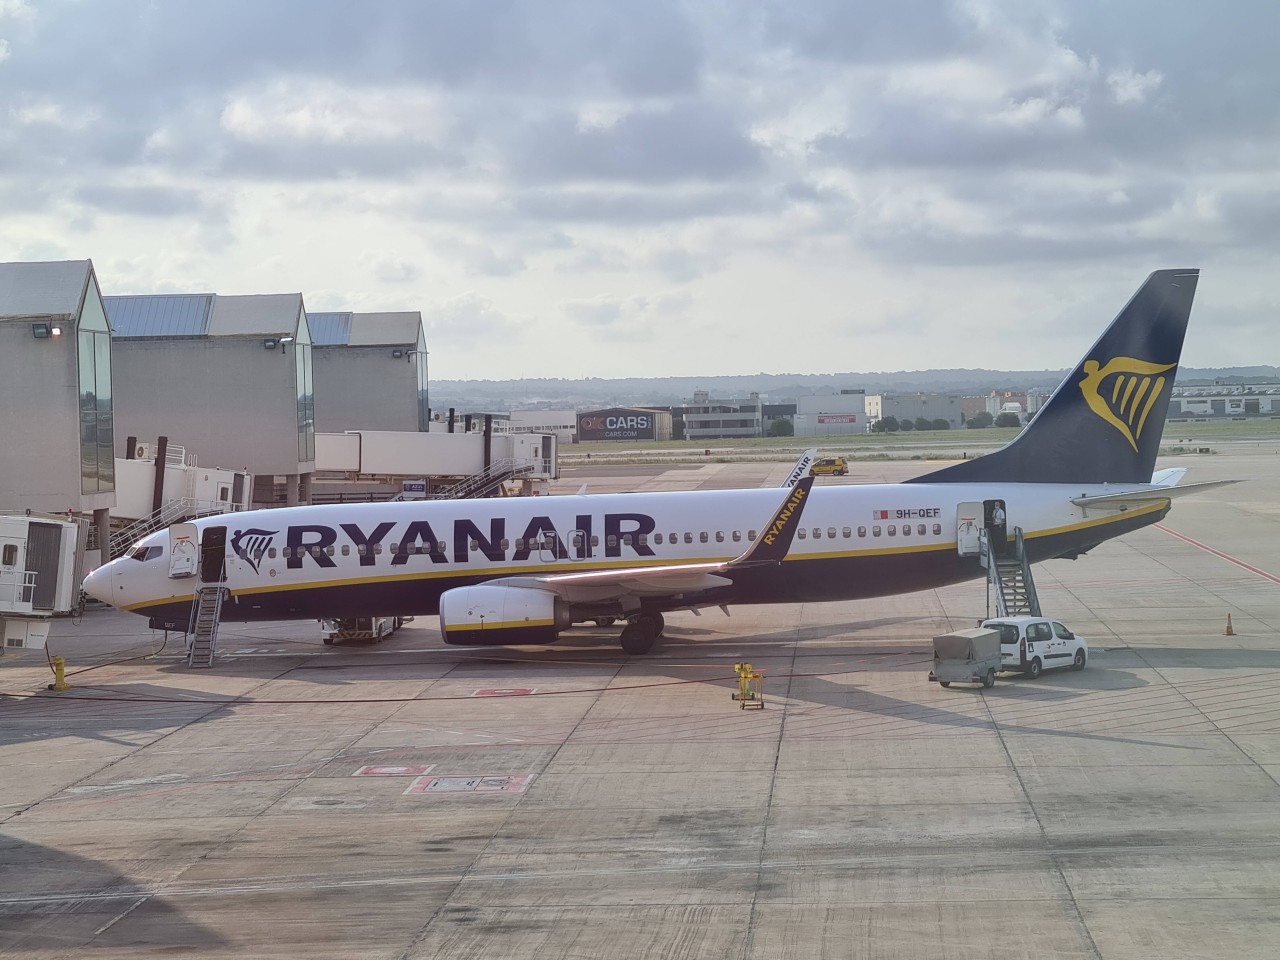 Auf dem Flug in den Urlaub auf Mallorca mussten Passagiere drei Stunden bei brütender Hitze im Ryanair-Flieger schmoren. (Symbolbild)